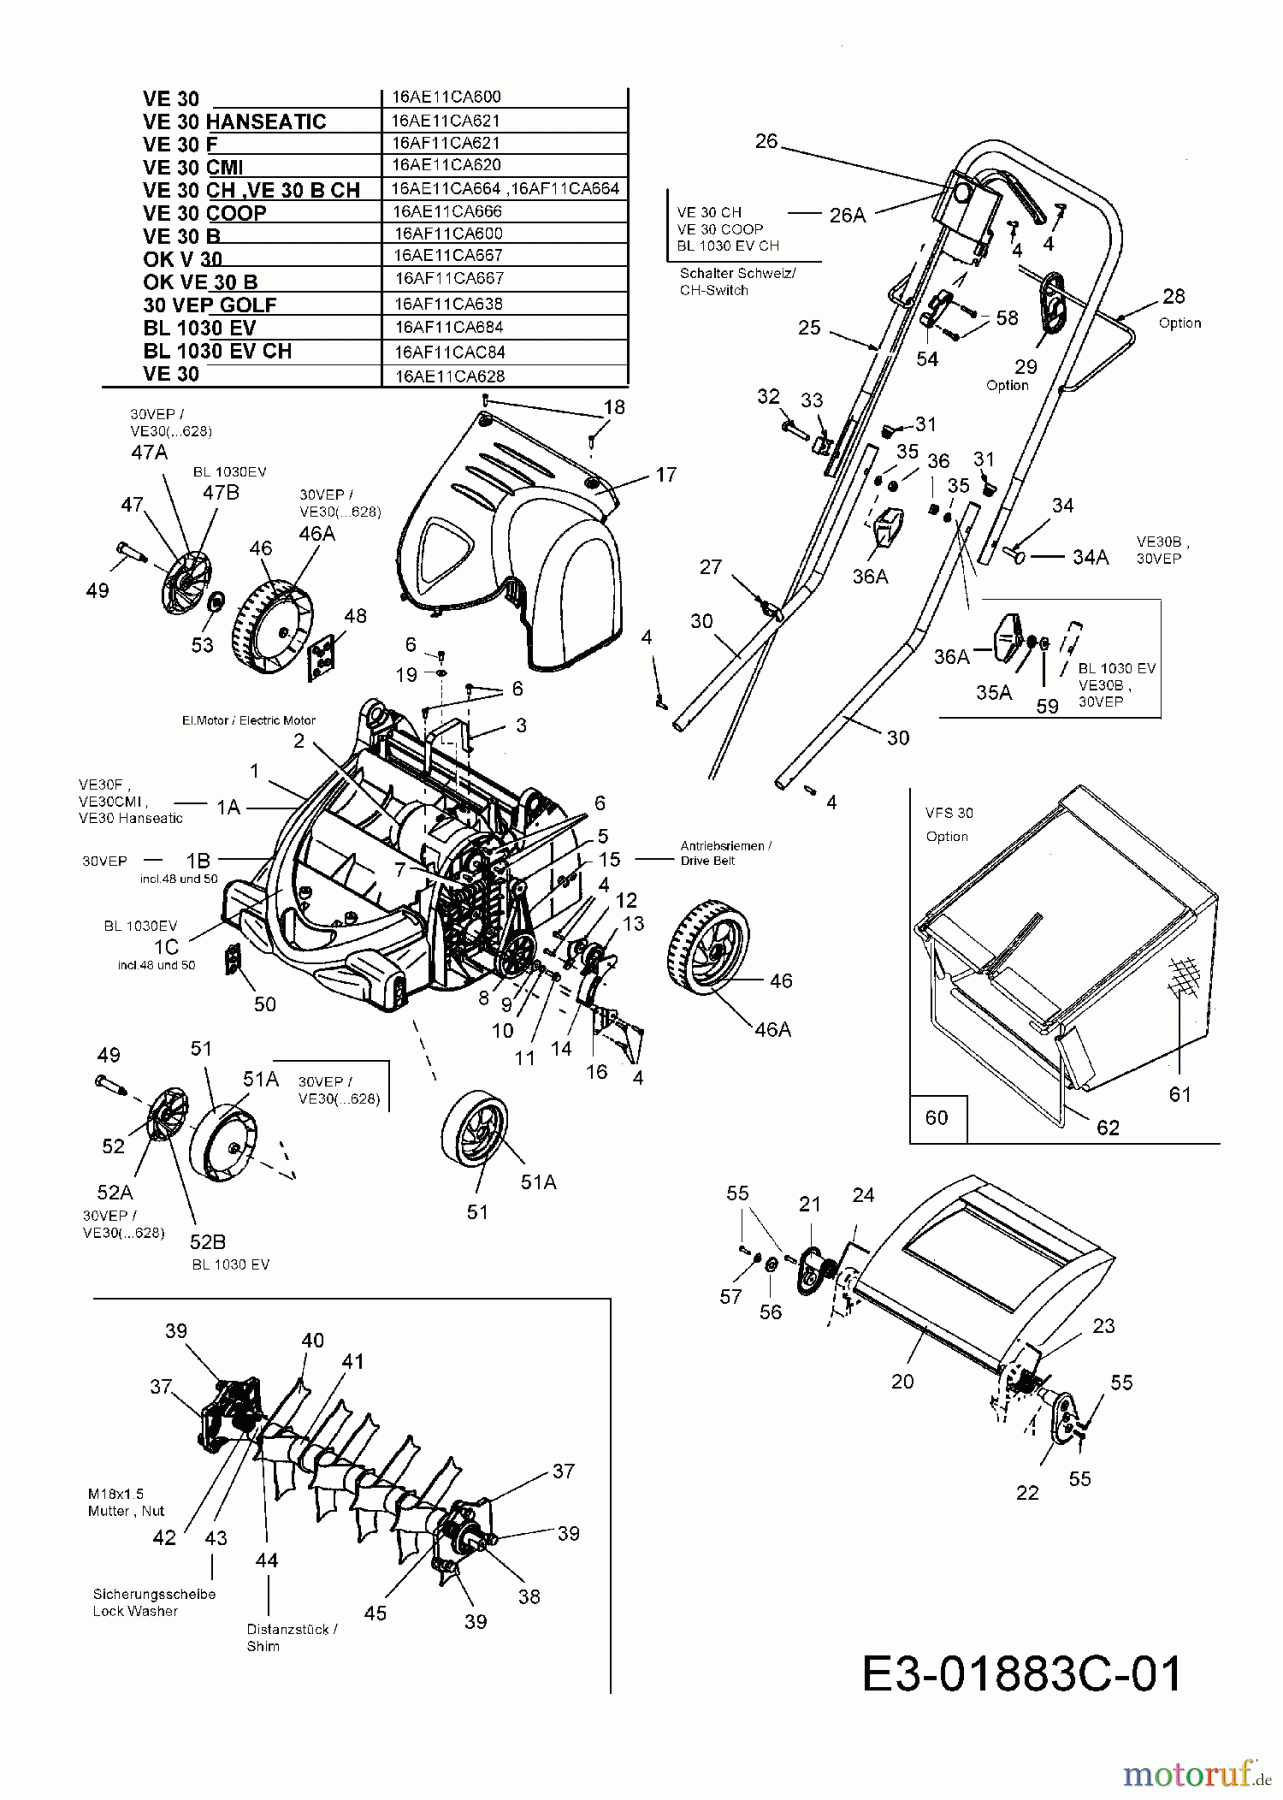  Bolens Elektrovertikutierer BL 1030 EV 16AF11CAC84  (2006) Grundgerät